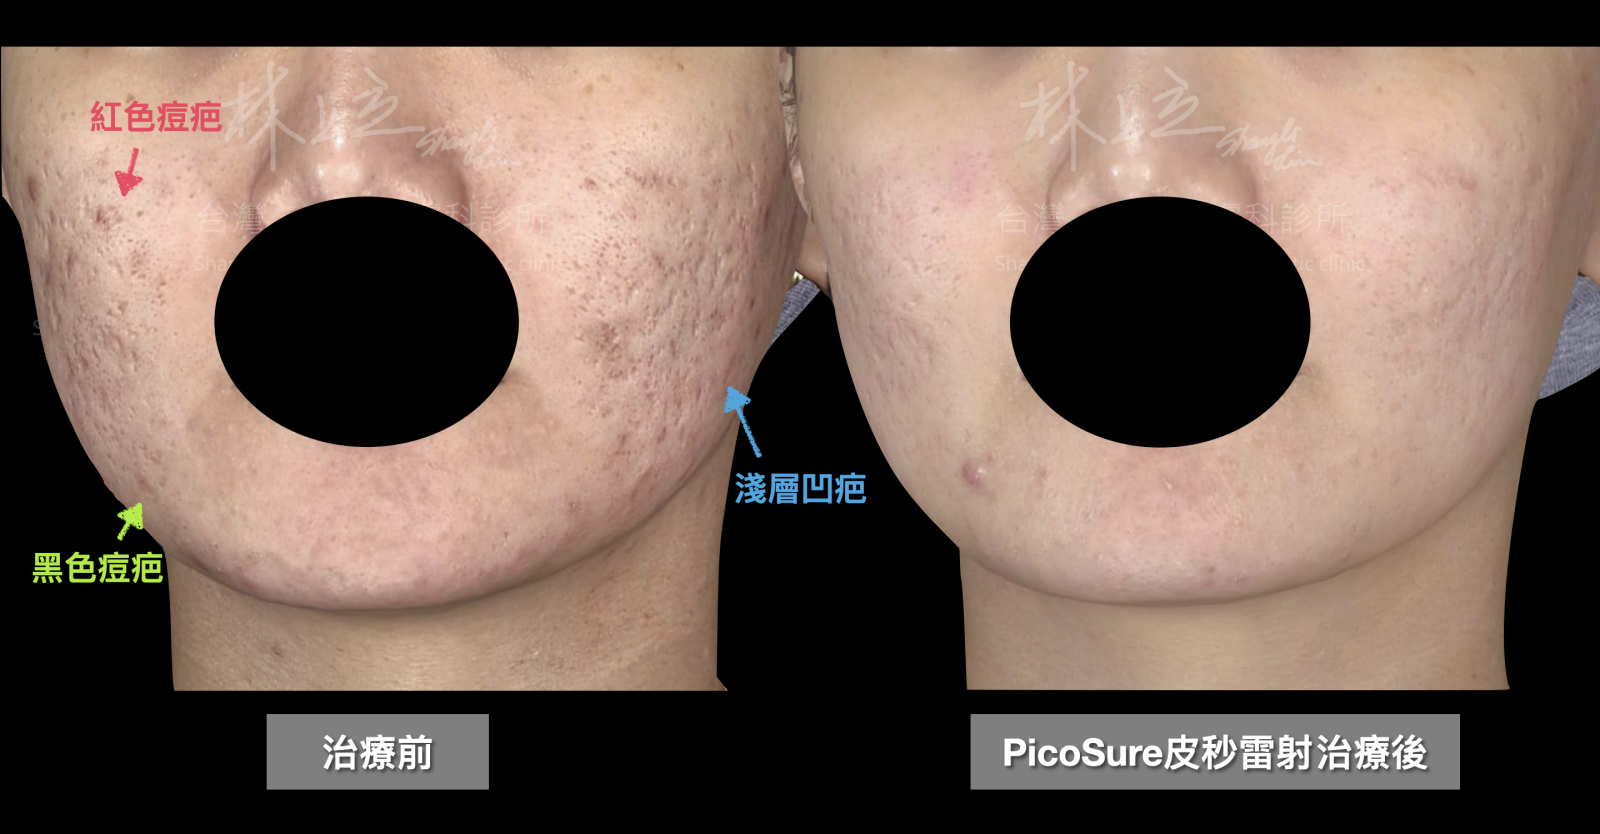 存在黑色痘疤、紅色痘疤和淺層凹疤的狀況，都在接受PicoSure755蜂巢皮秒雷射的治療之後，得到相當大幅度的改善。